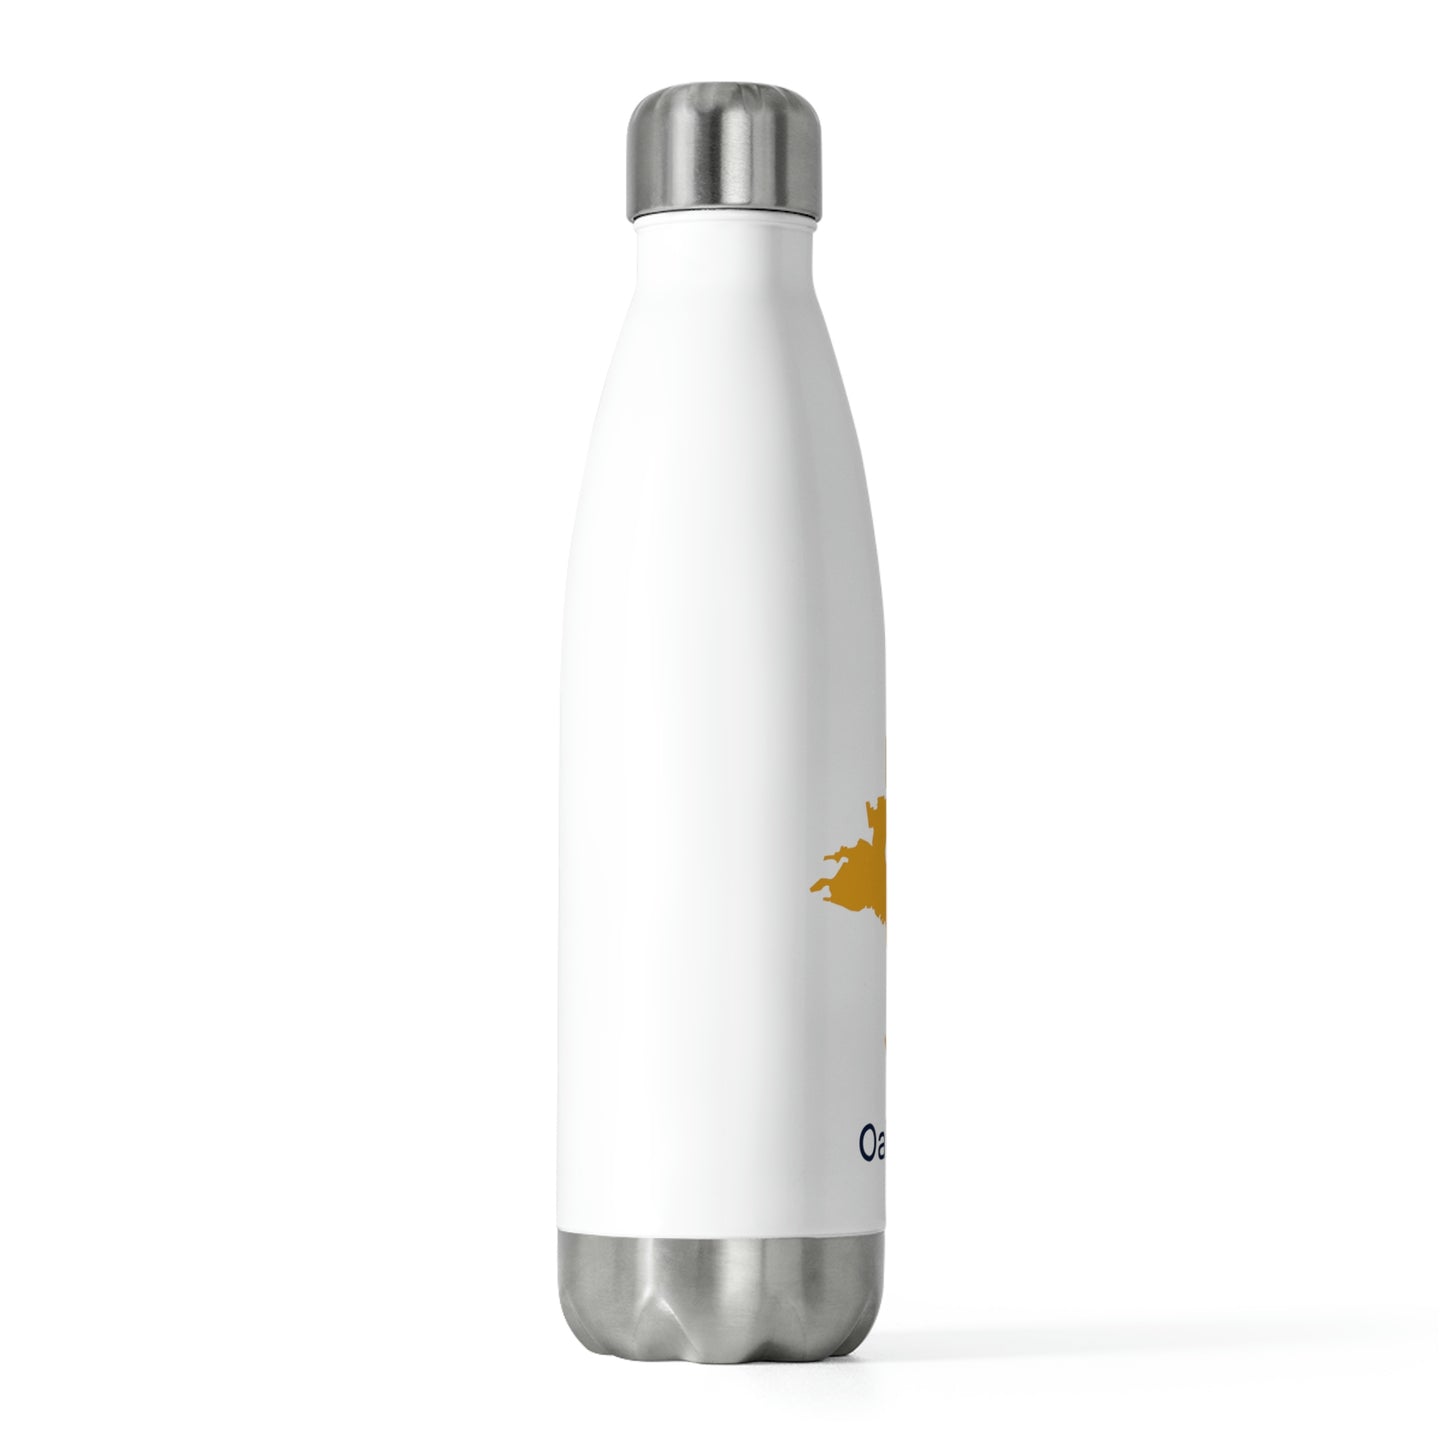 Oakland Orange 20oz Insulated Bottle